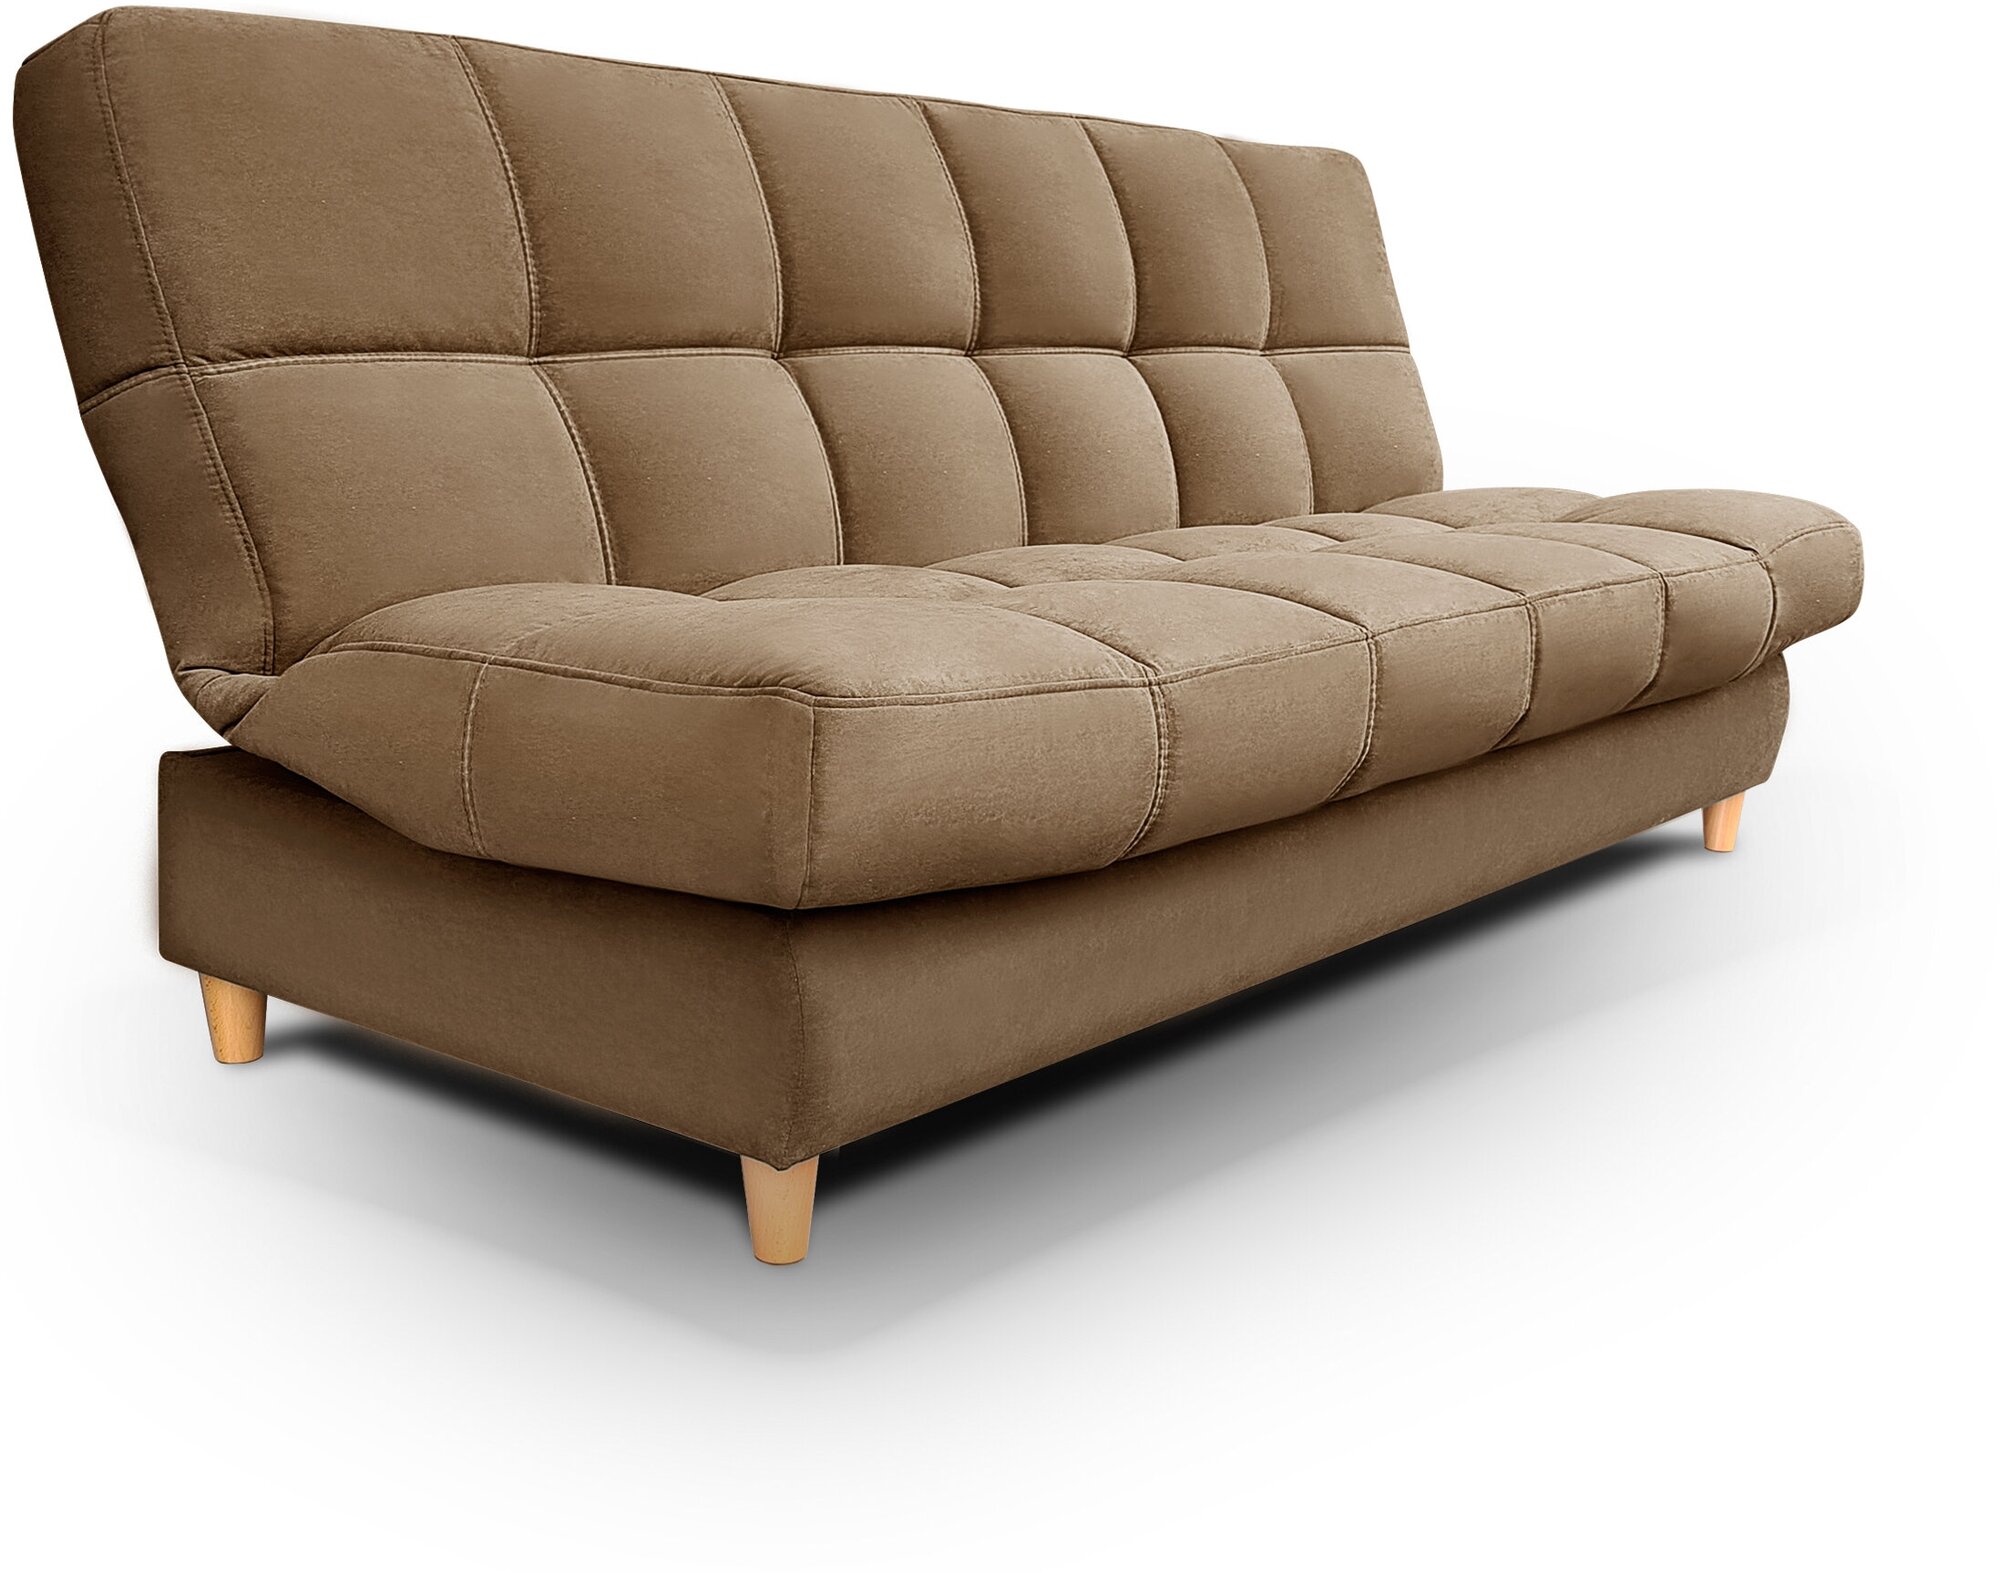 Саймон-прямой диван кровать Саймон ортопедический(коричневый)с ящиком для белья, без подлокотников, с пружинным блоком, механизм клик-кляк, 210х90х105см